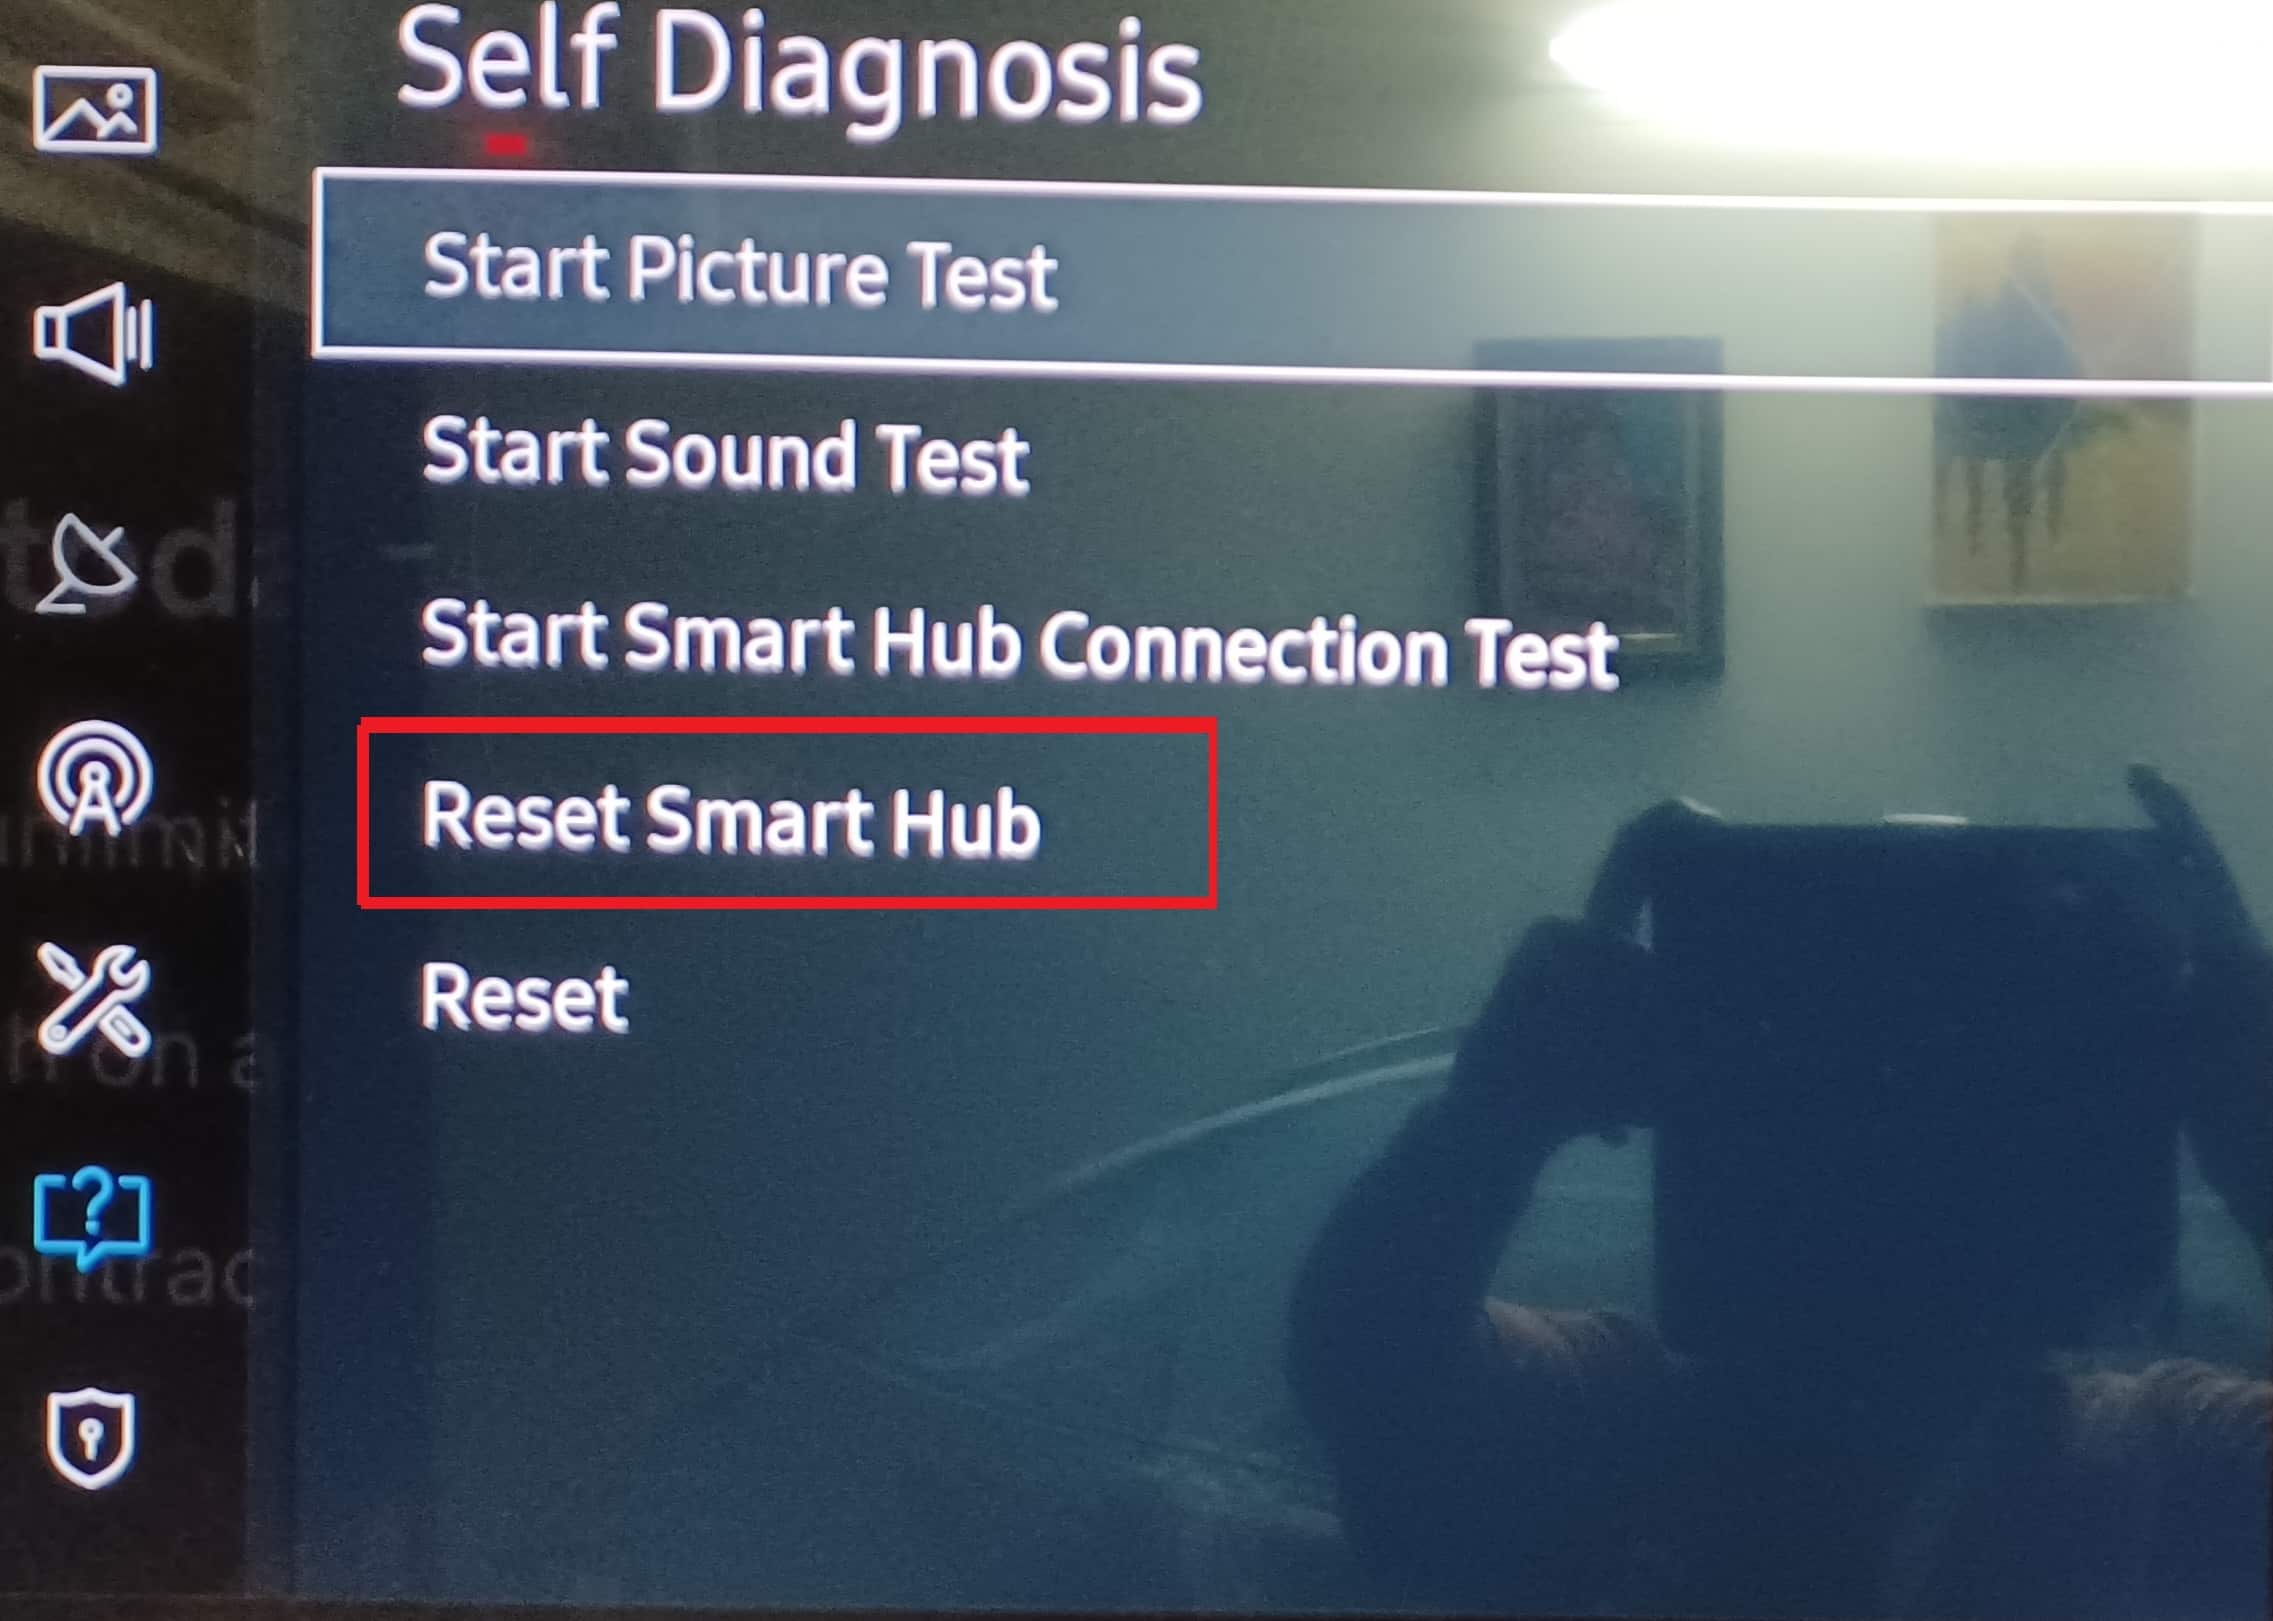 การวินิจฉัยตนเอง รีเซ็ตฮับอัจฉริยะ Samsung Smart TV